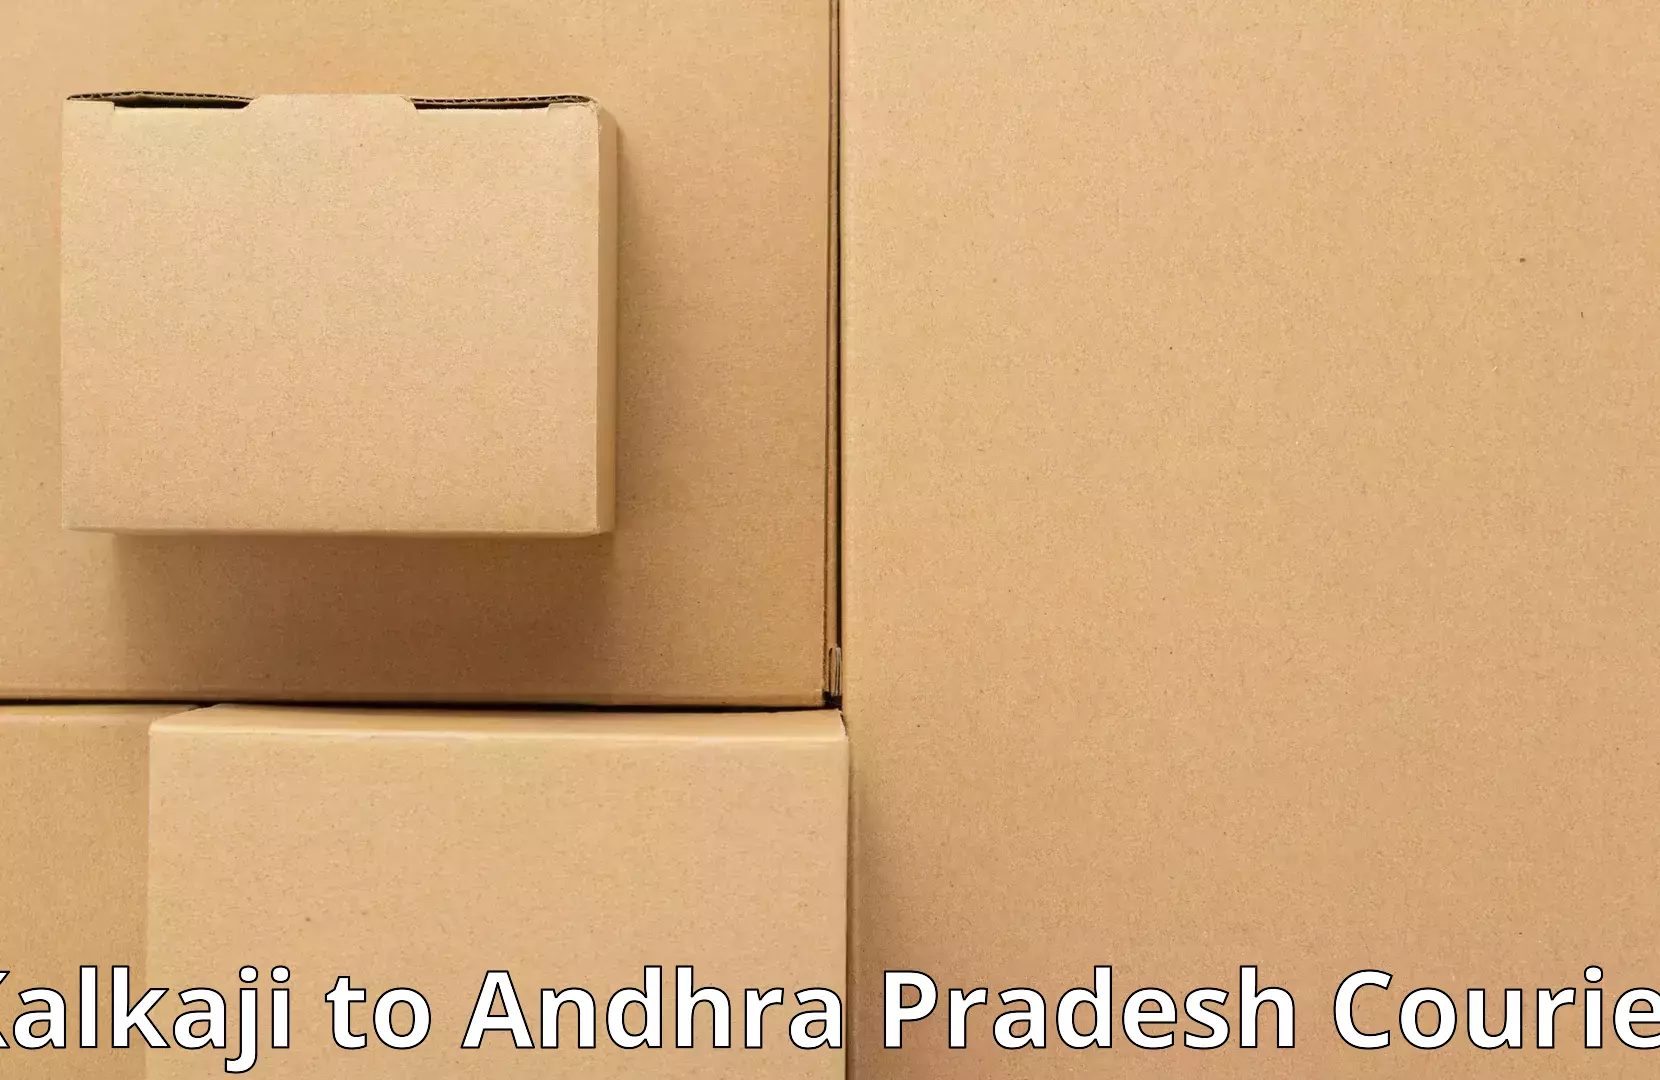 Trusted relocation experts in Kalkaji to Andhra Pradesh